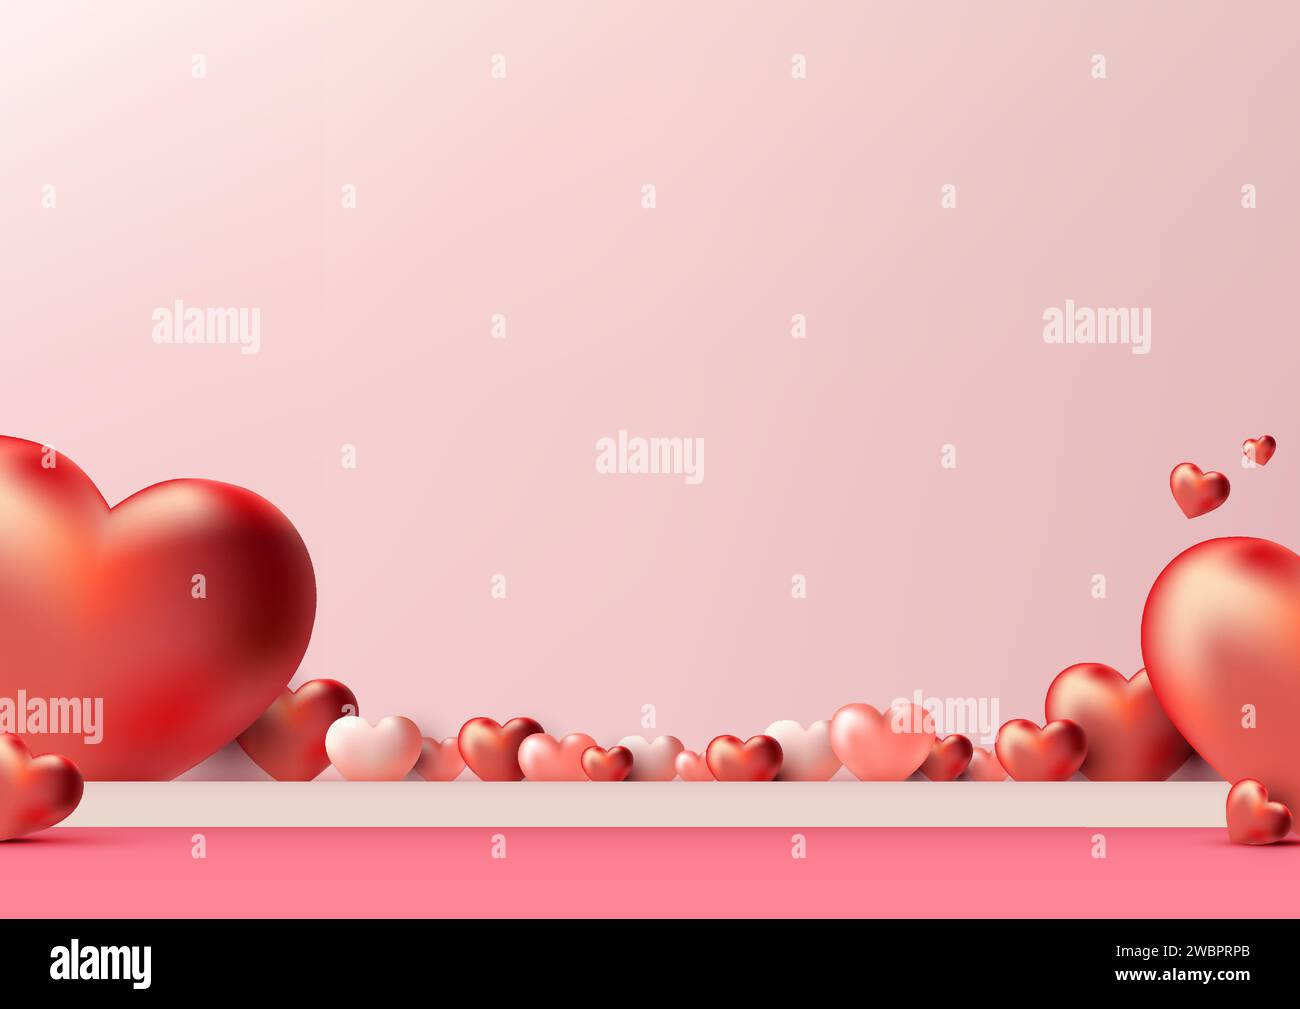 Produkte zum Valentinstag glänzen mit diesem fotorealistischen 3D-Podium-Modell. Mit einer rosafarbenen Plattform, die mit Herzen verziert ist. Vektorabbildung Stock Vektor